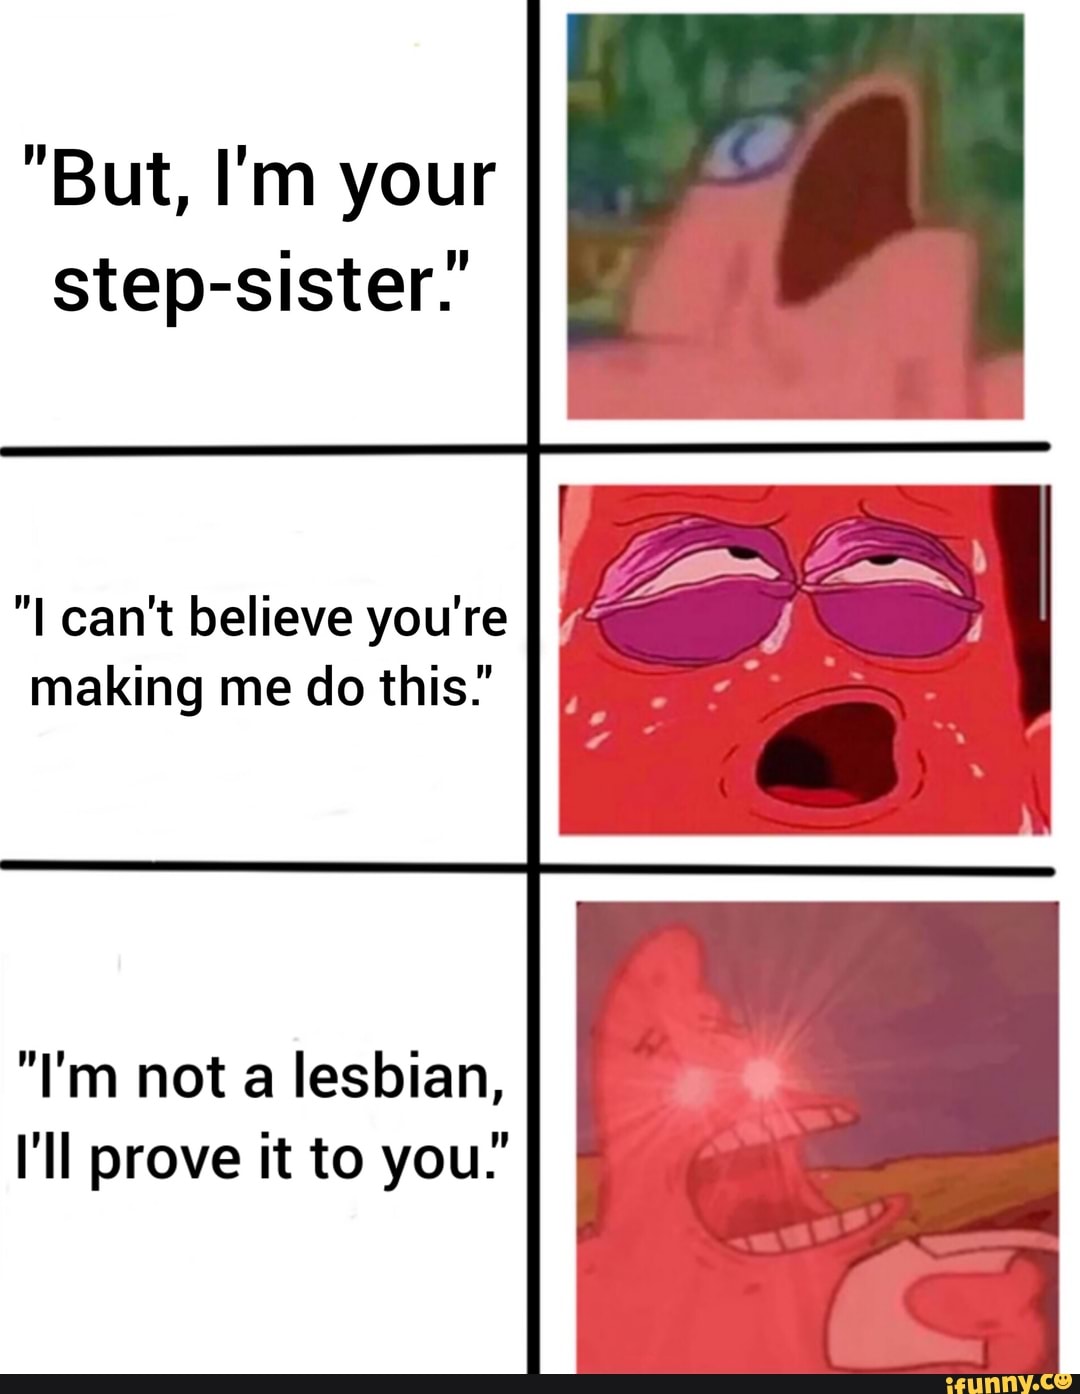 Stepsister Lesbian